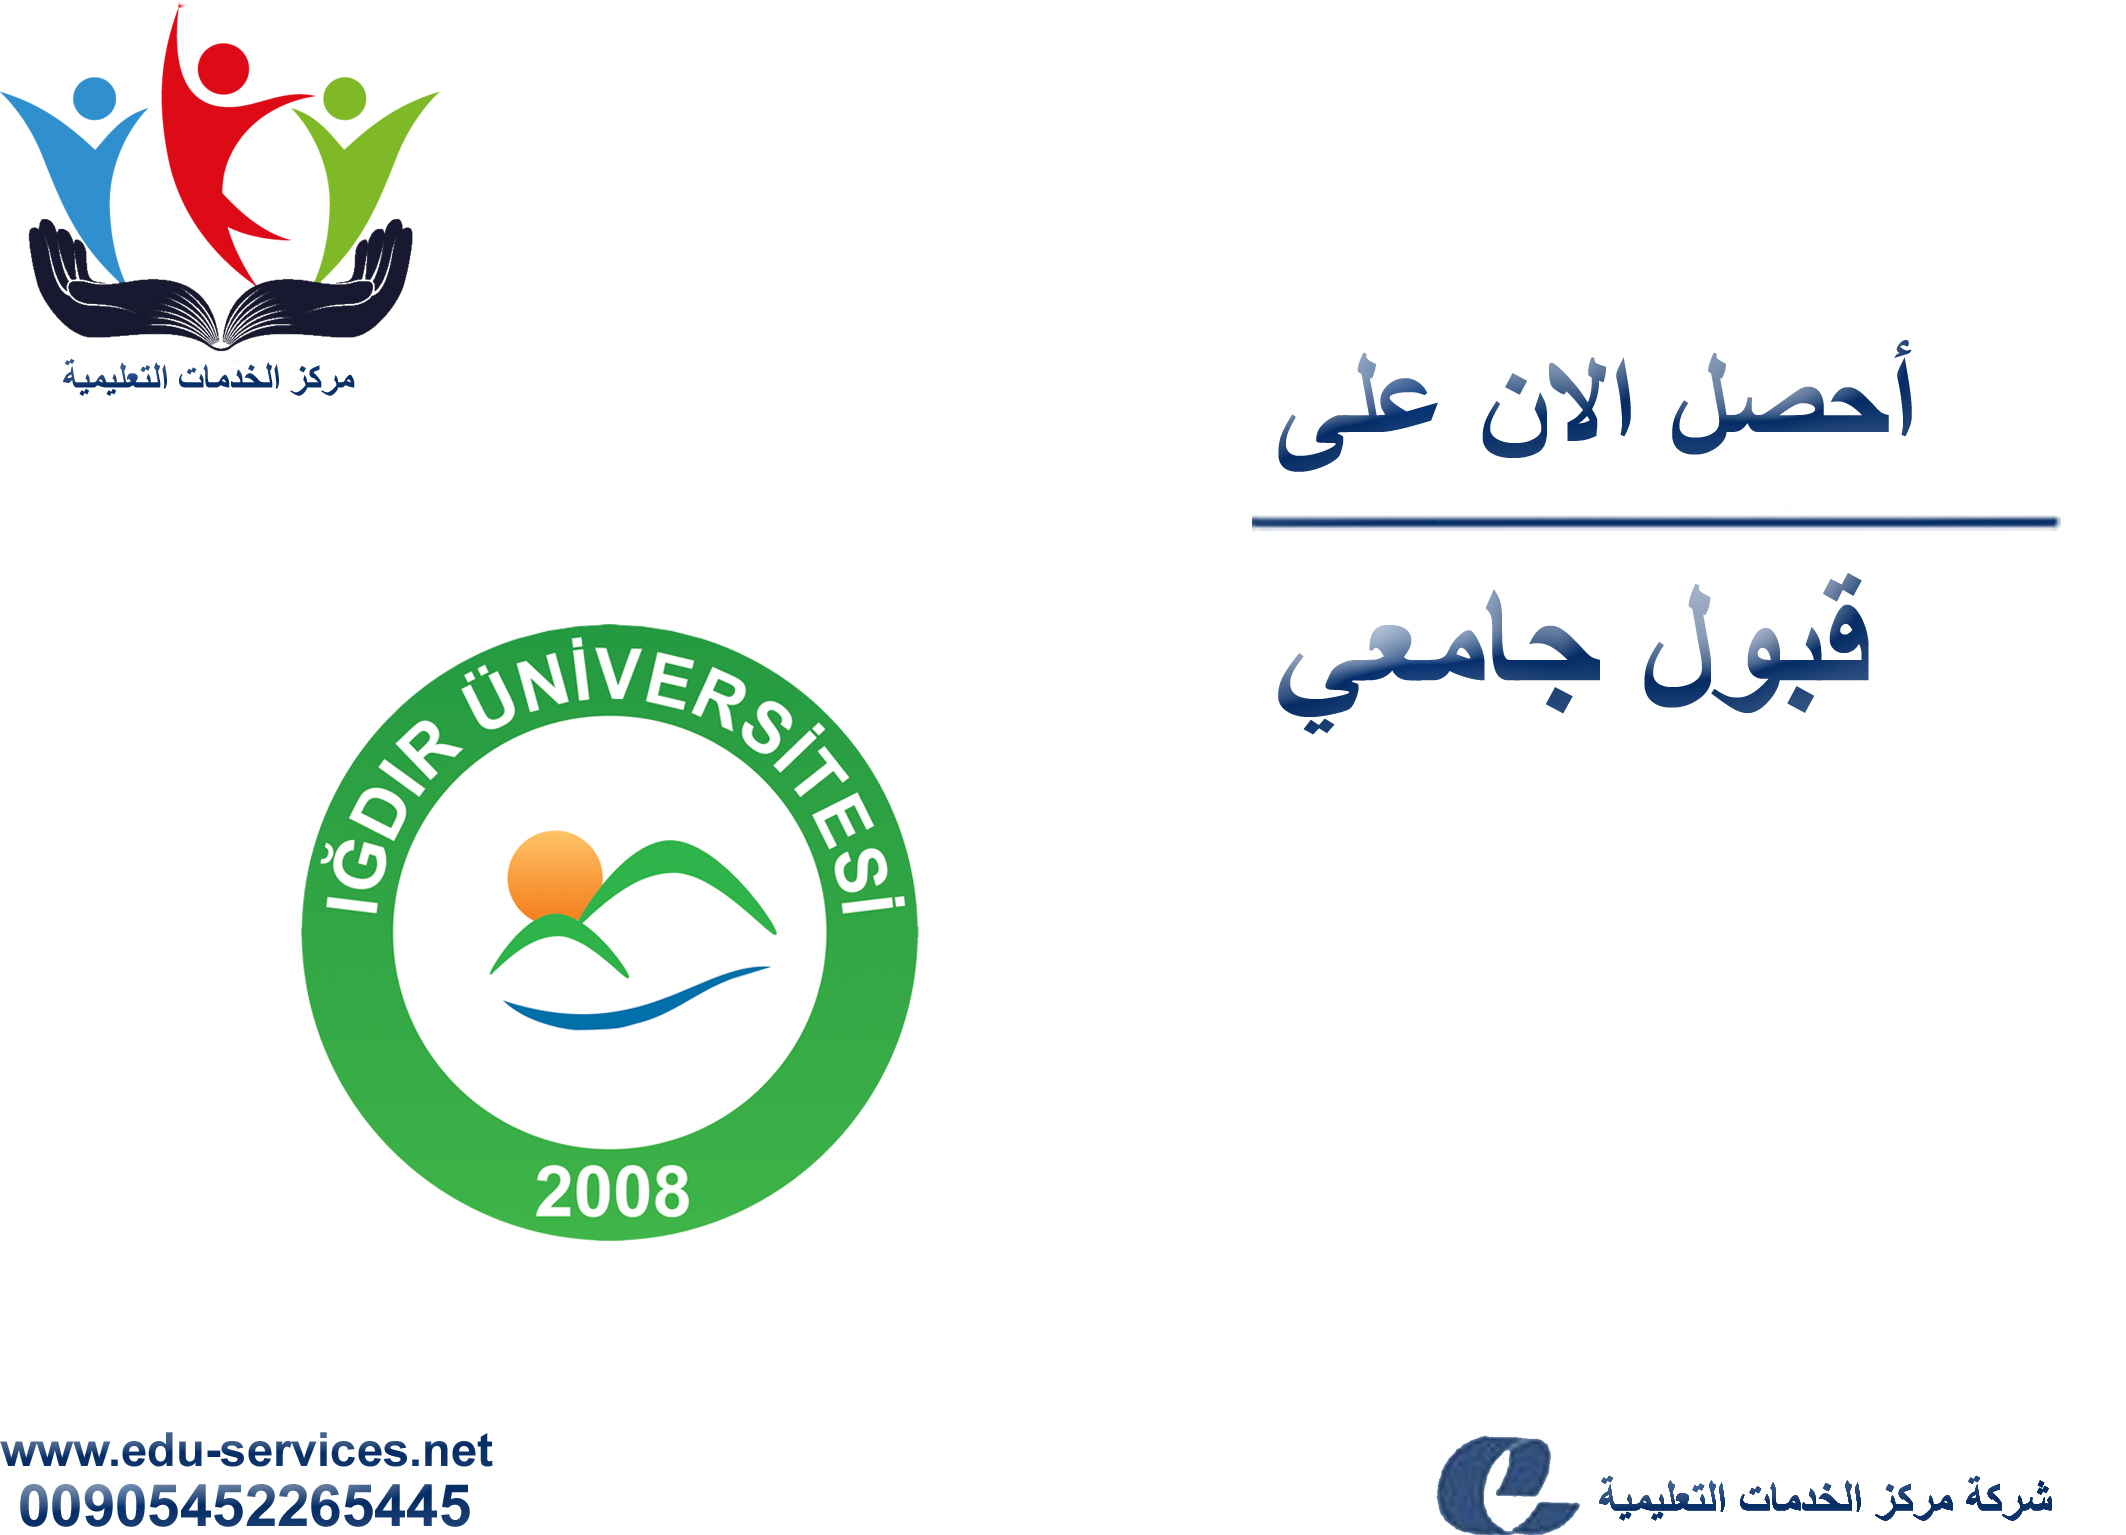 افتتاح التسجيل في جامعة اغدير للعام 2019-2020